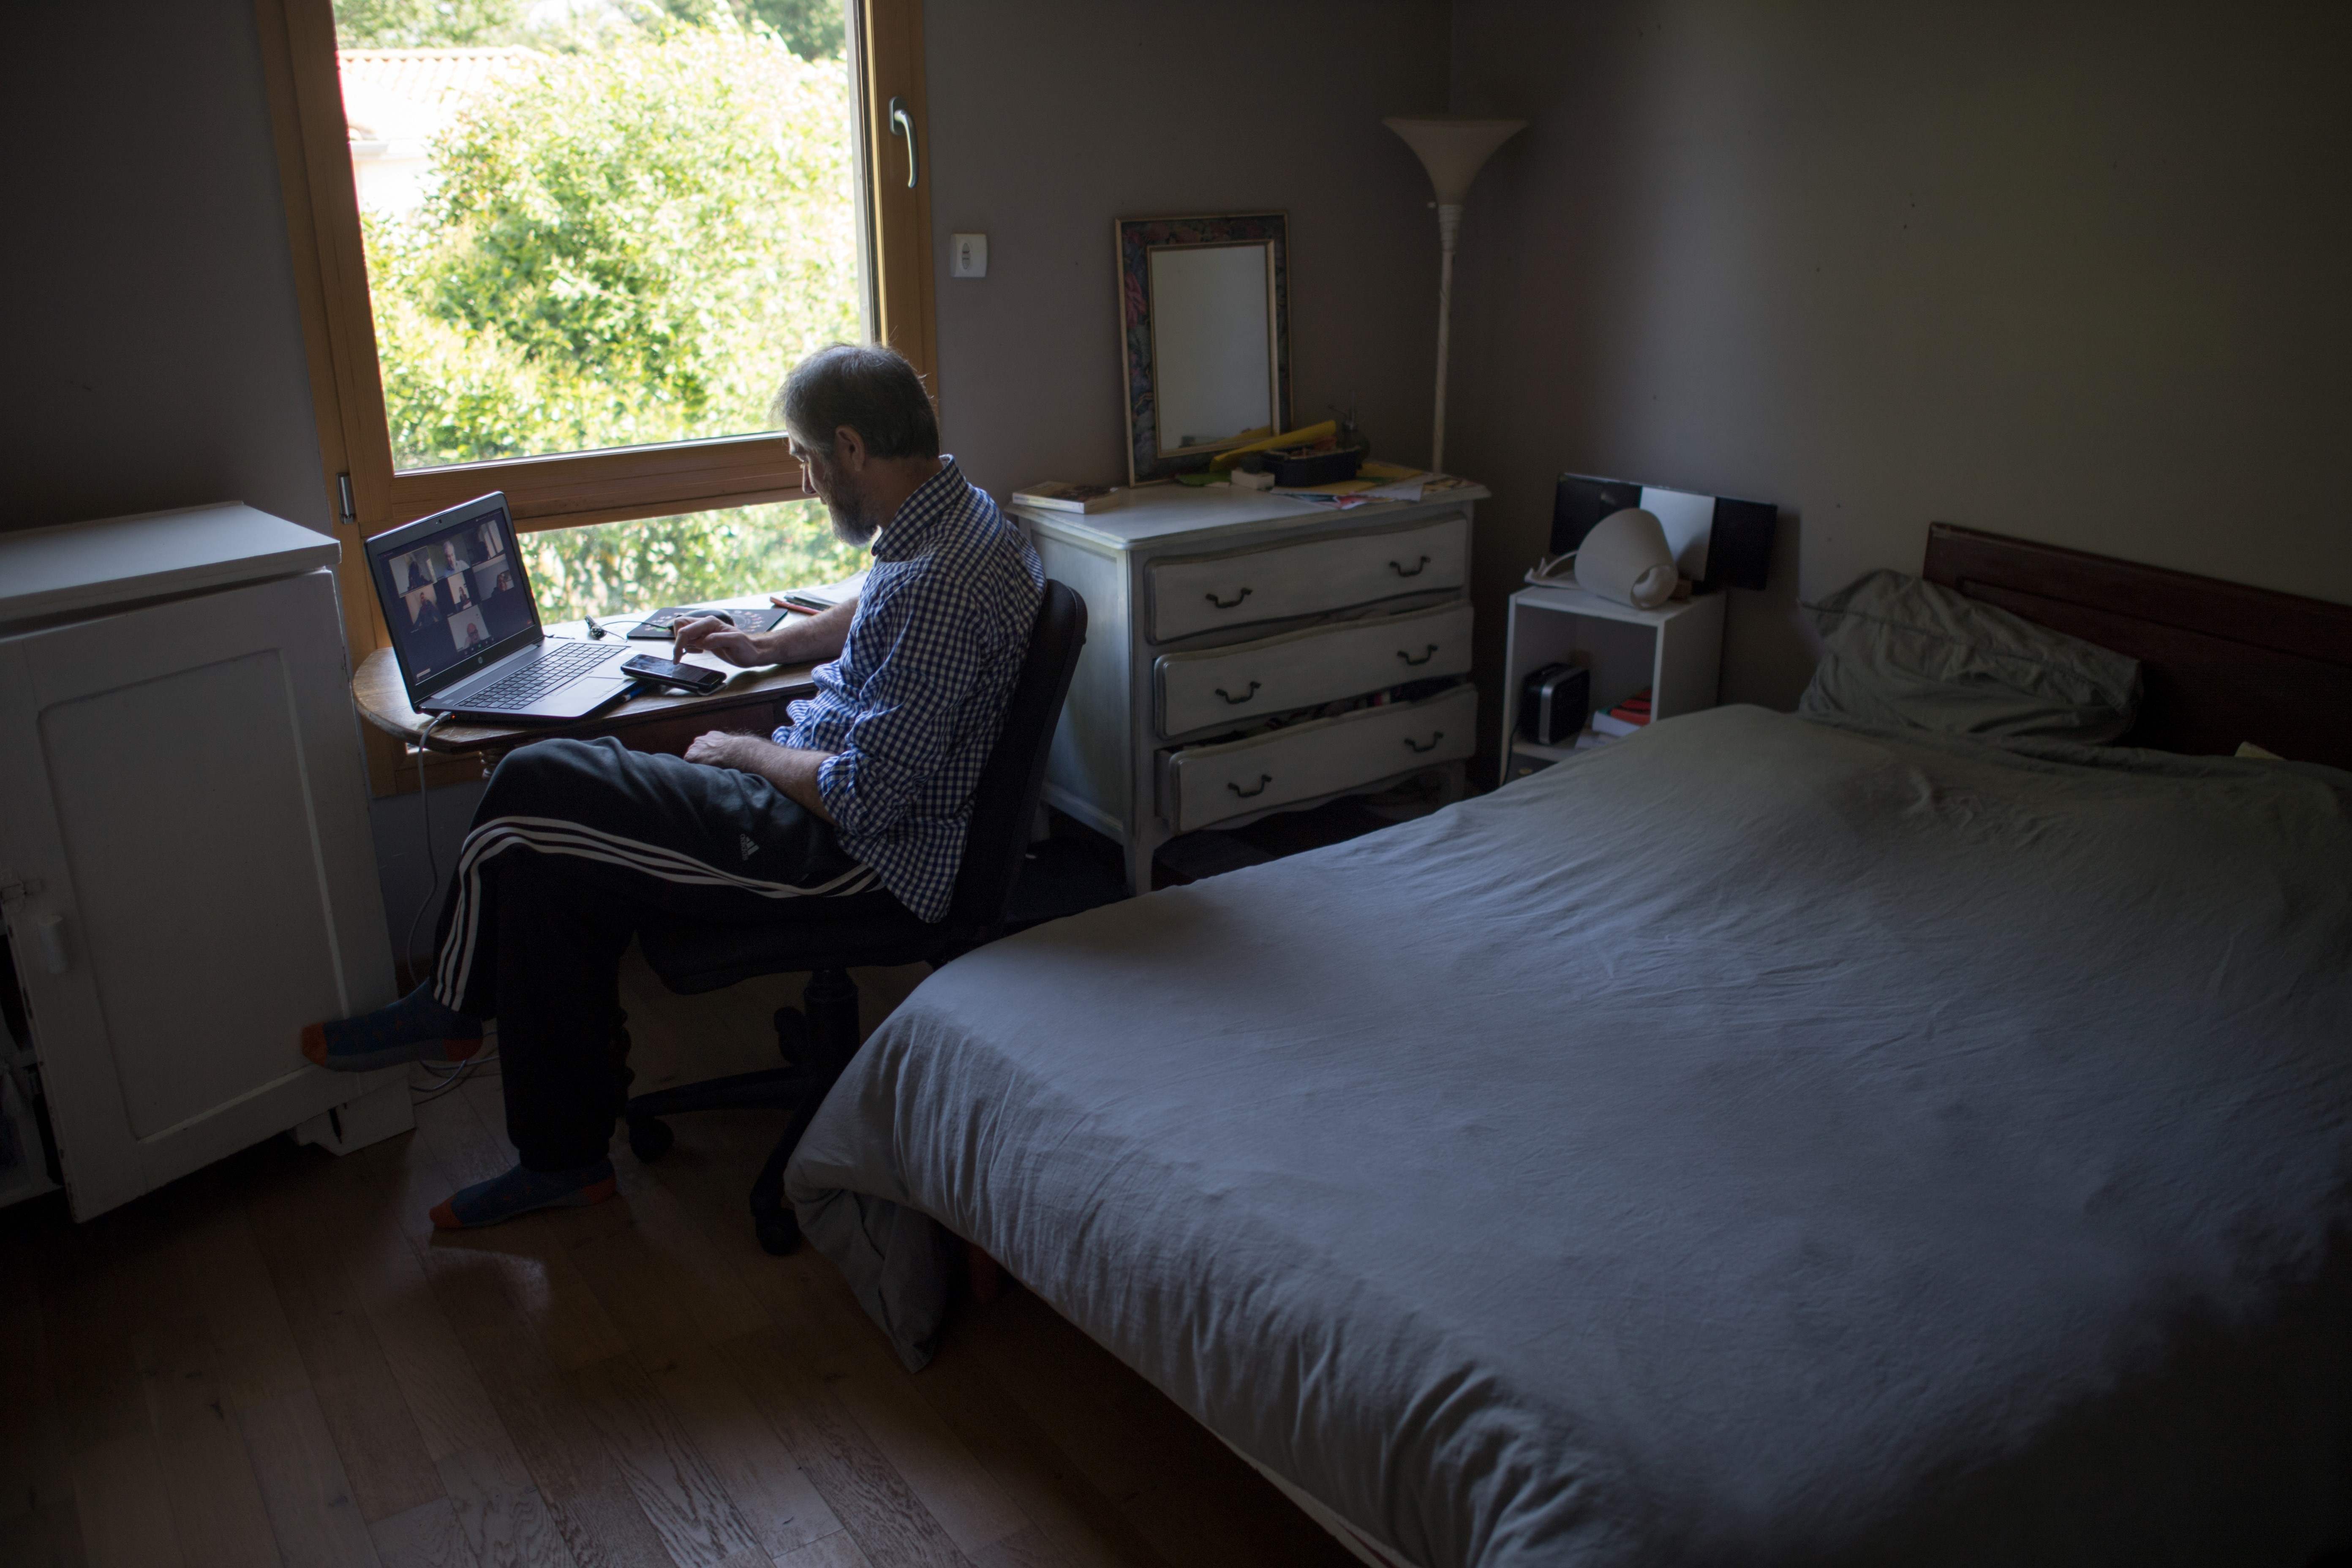 El internet se convirtió en un servicio básico durante la pandemia para muchos hogares donde los adultos trabajan en casa y los niños estudian a distancia. (Foto Prensa Libre: AFP)